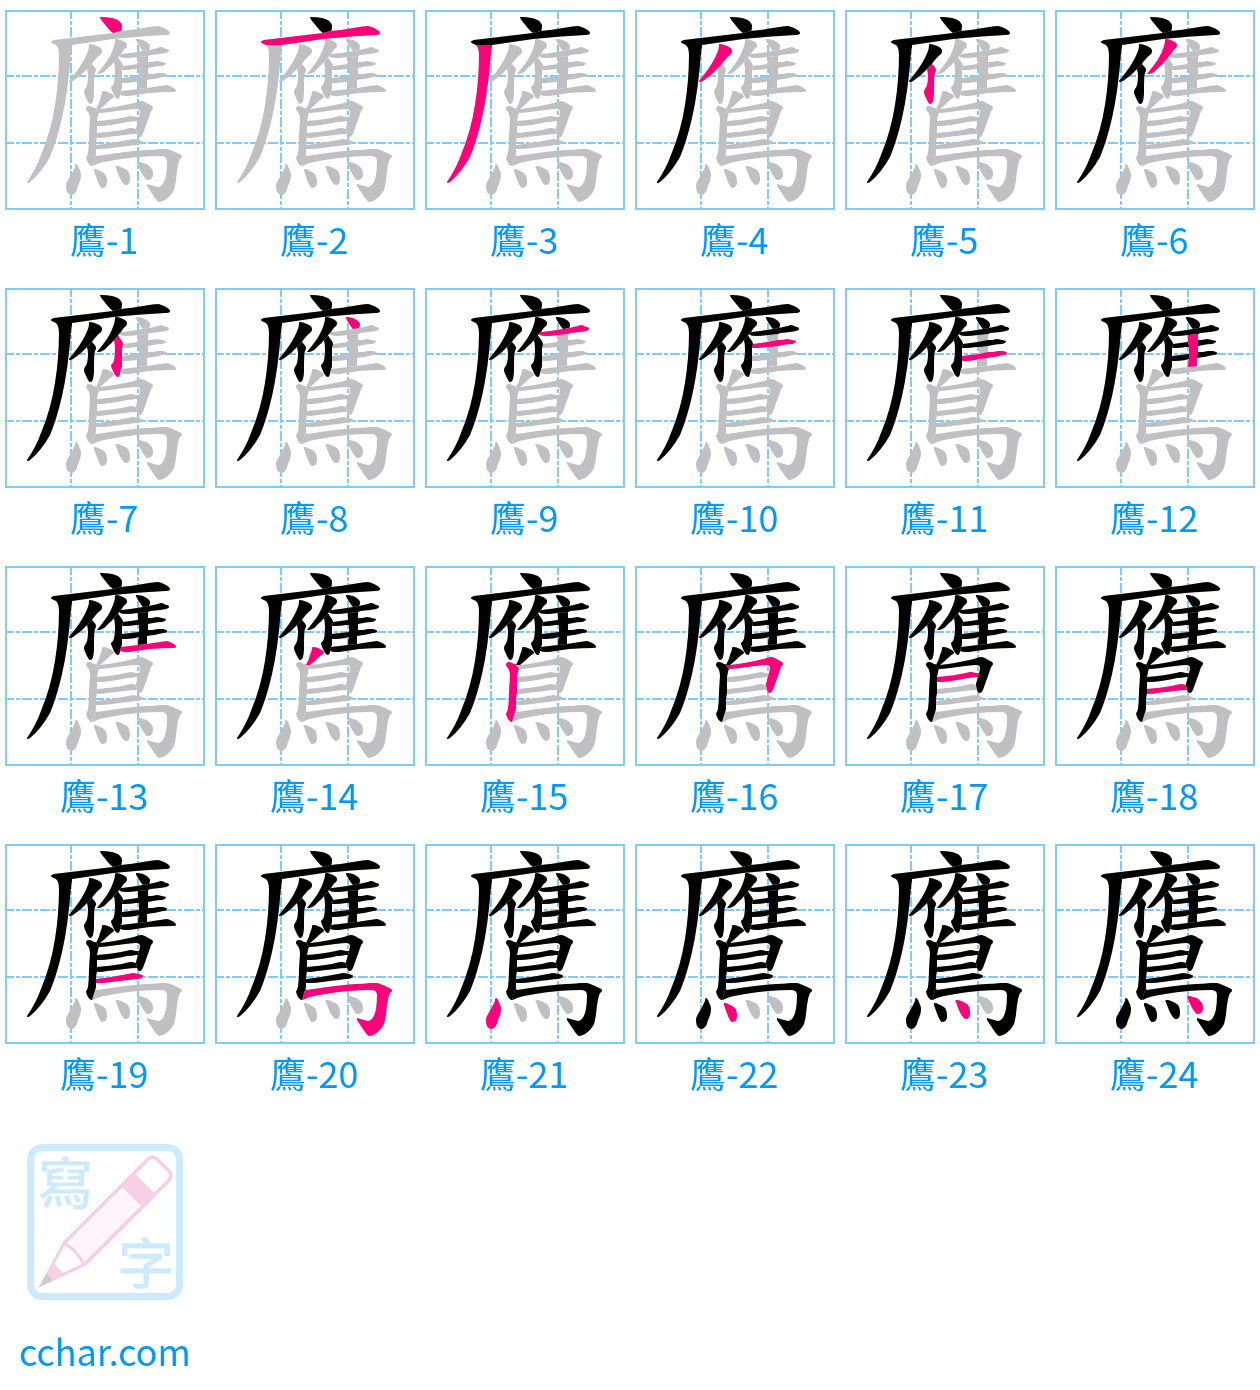 鷹 stroke order step-by-step diagram